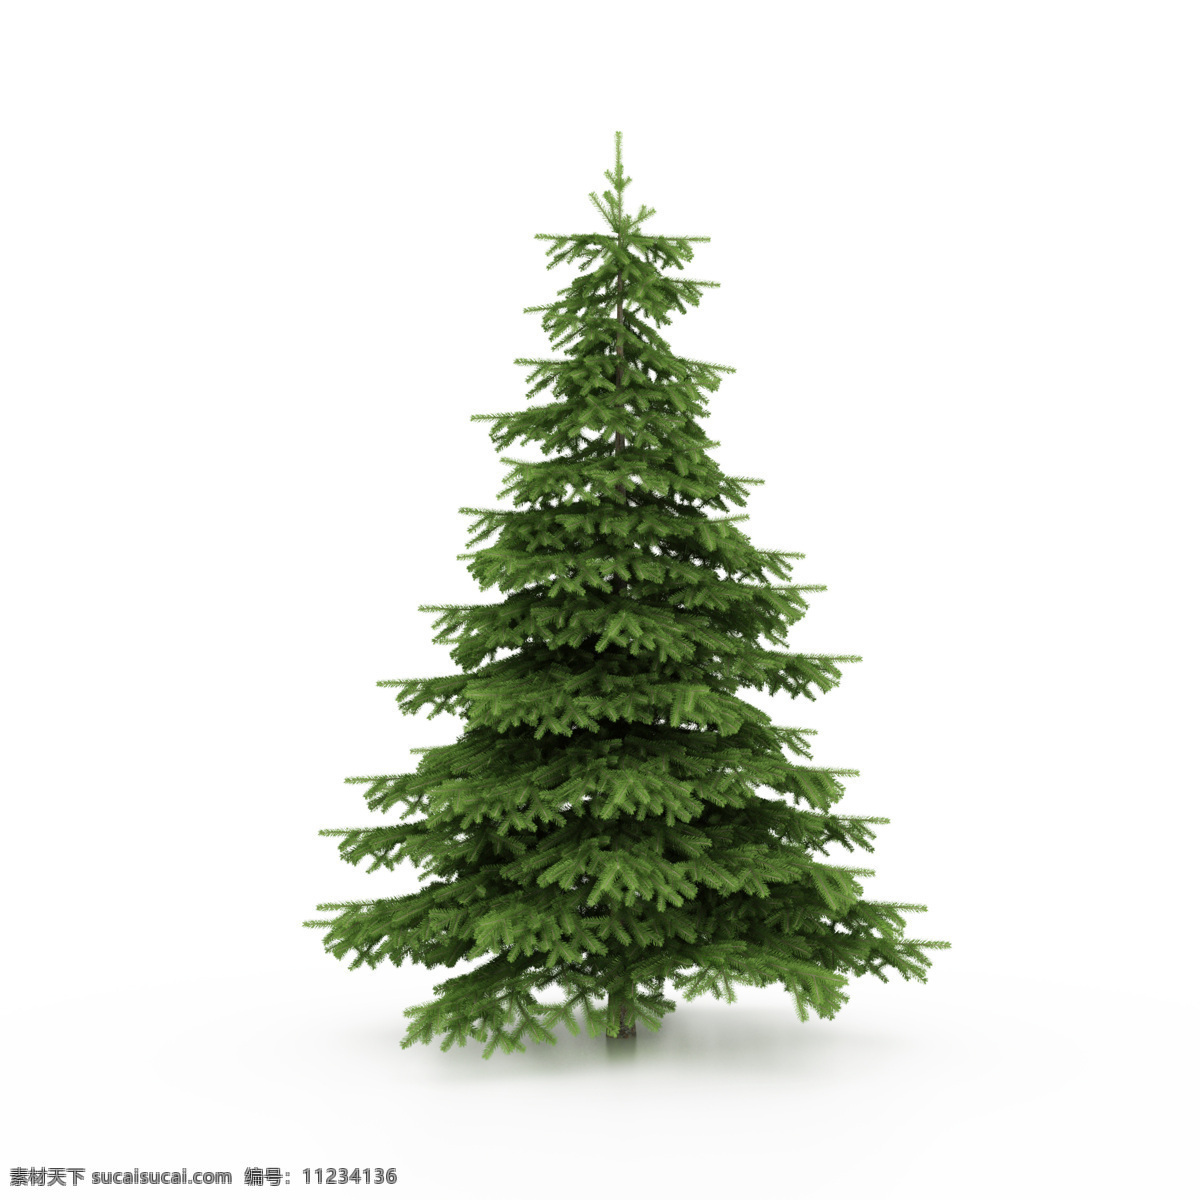 圣诞树 圣诞节素材 绿色圣诞树 节日庆典 生活百科 白色